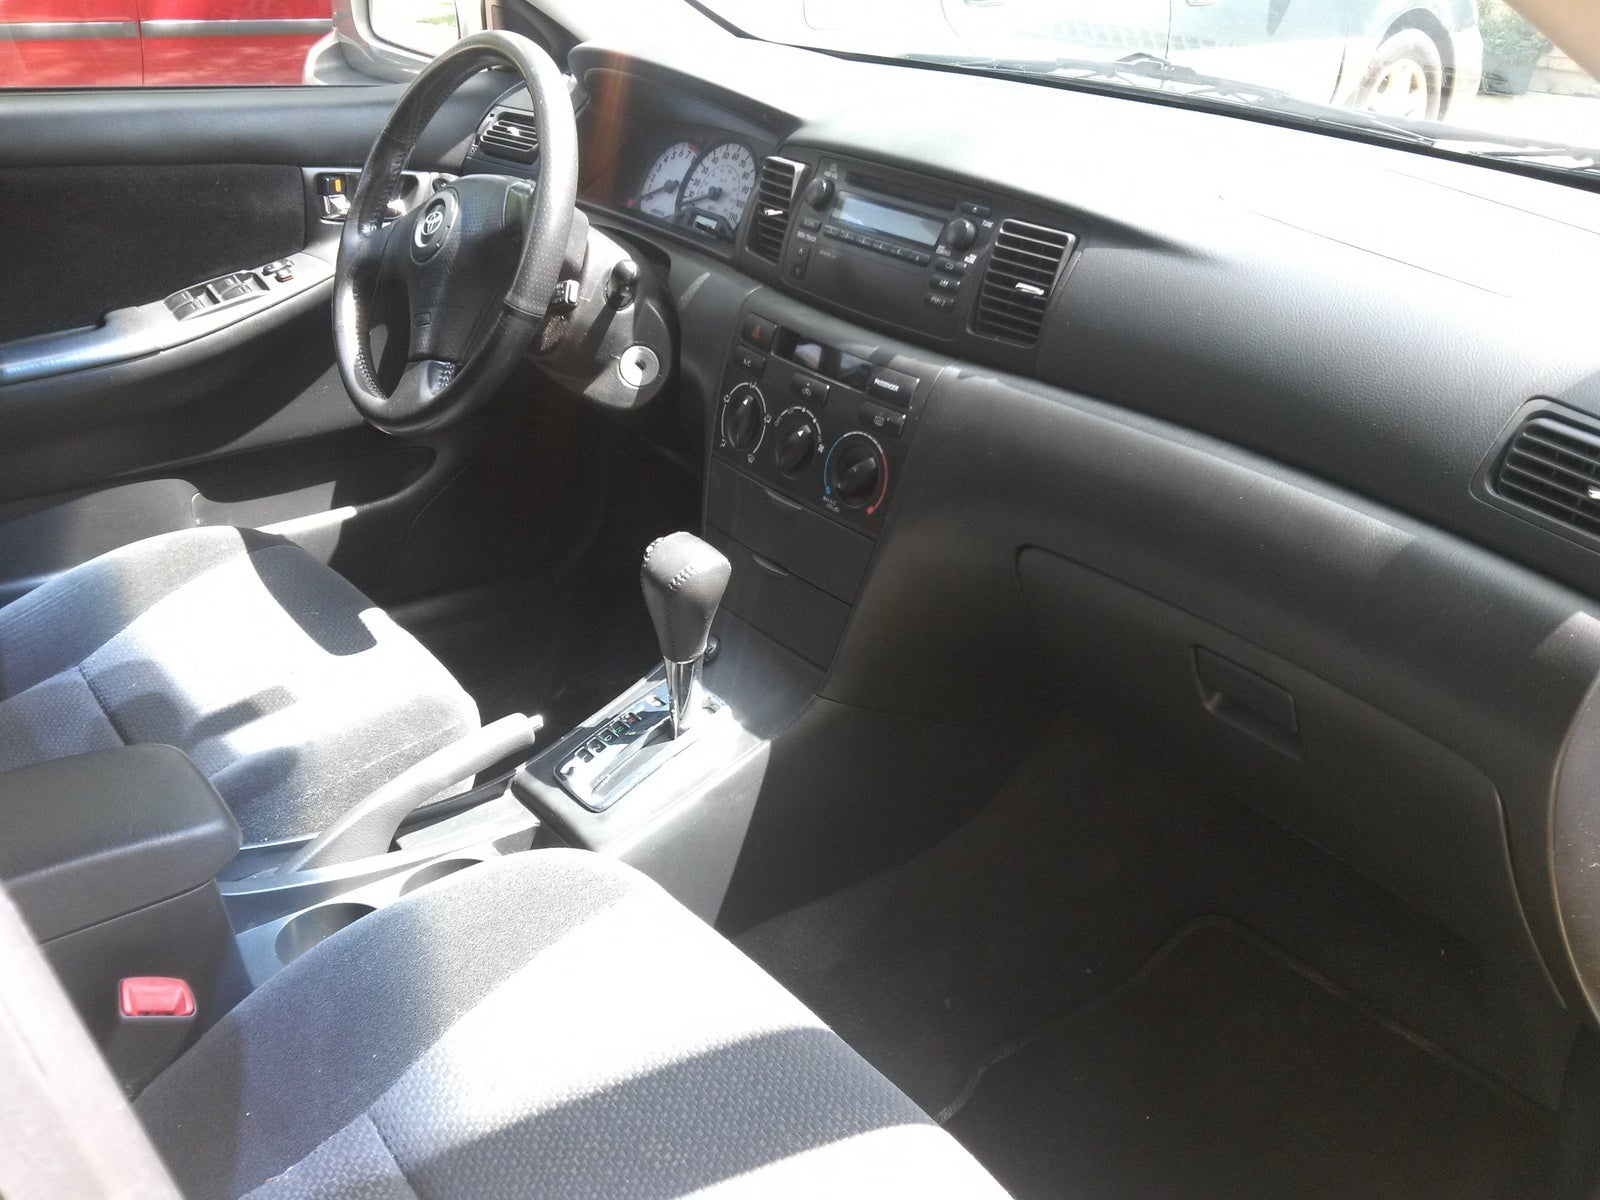 2004 Toyota Corolla Interior Pictures Cargurus